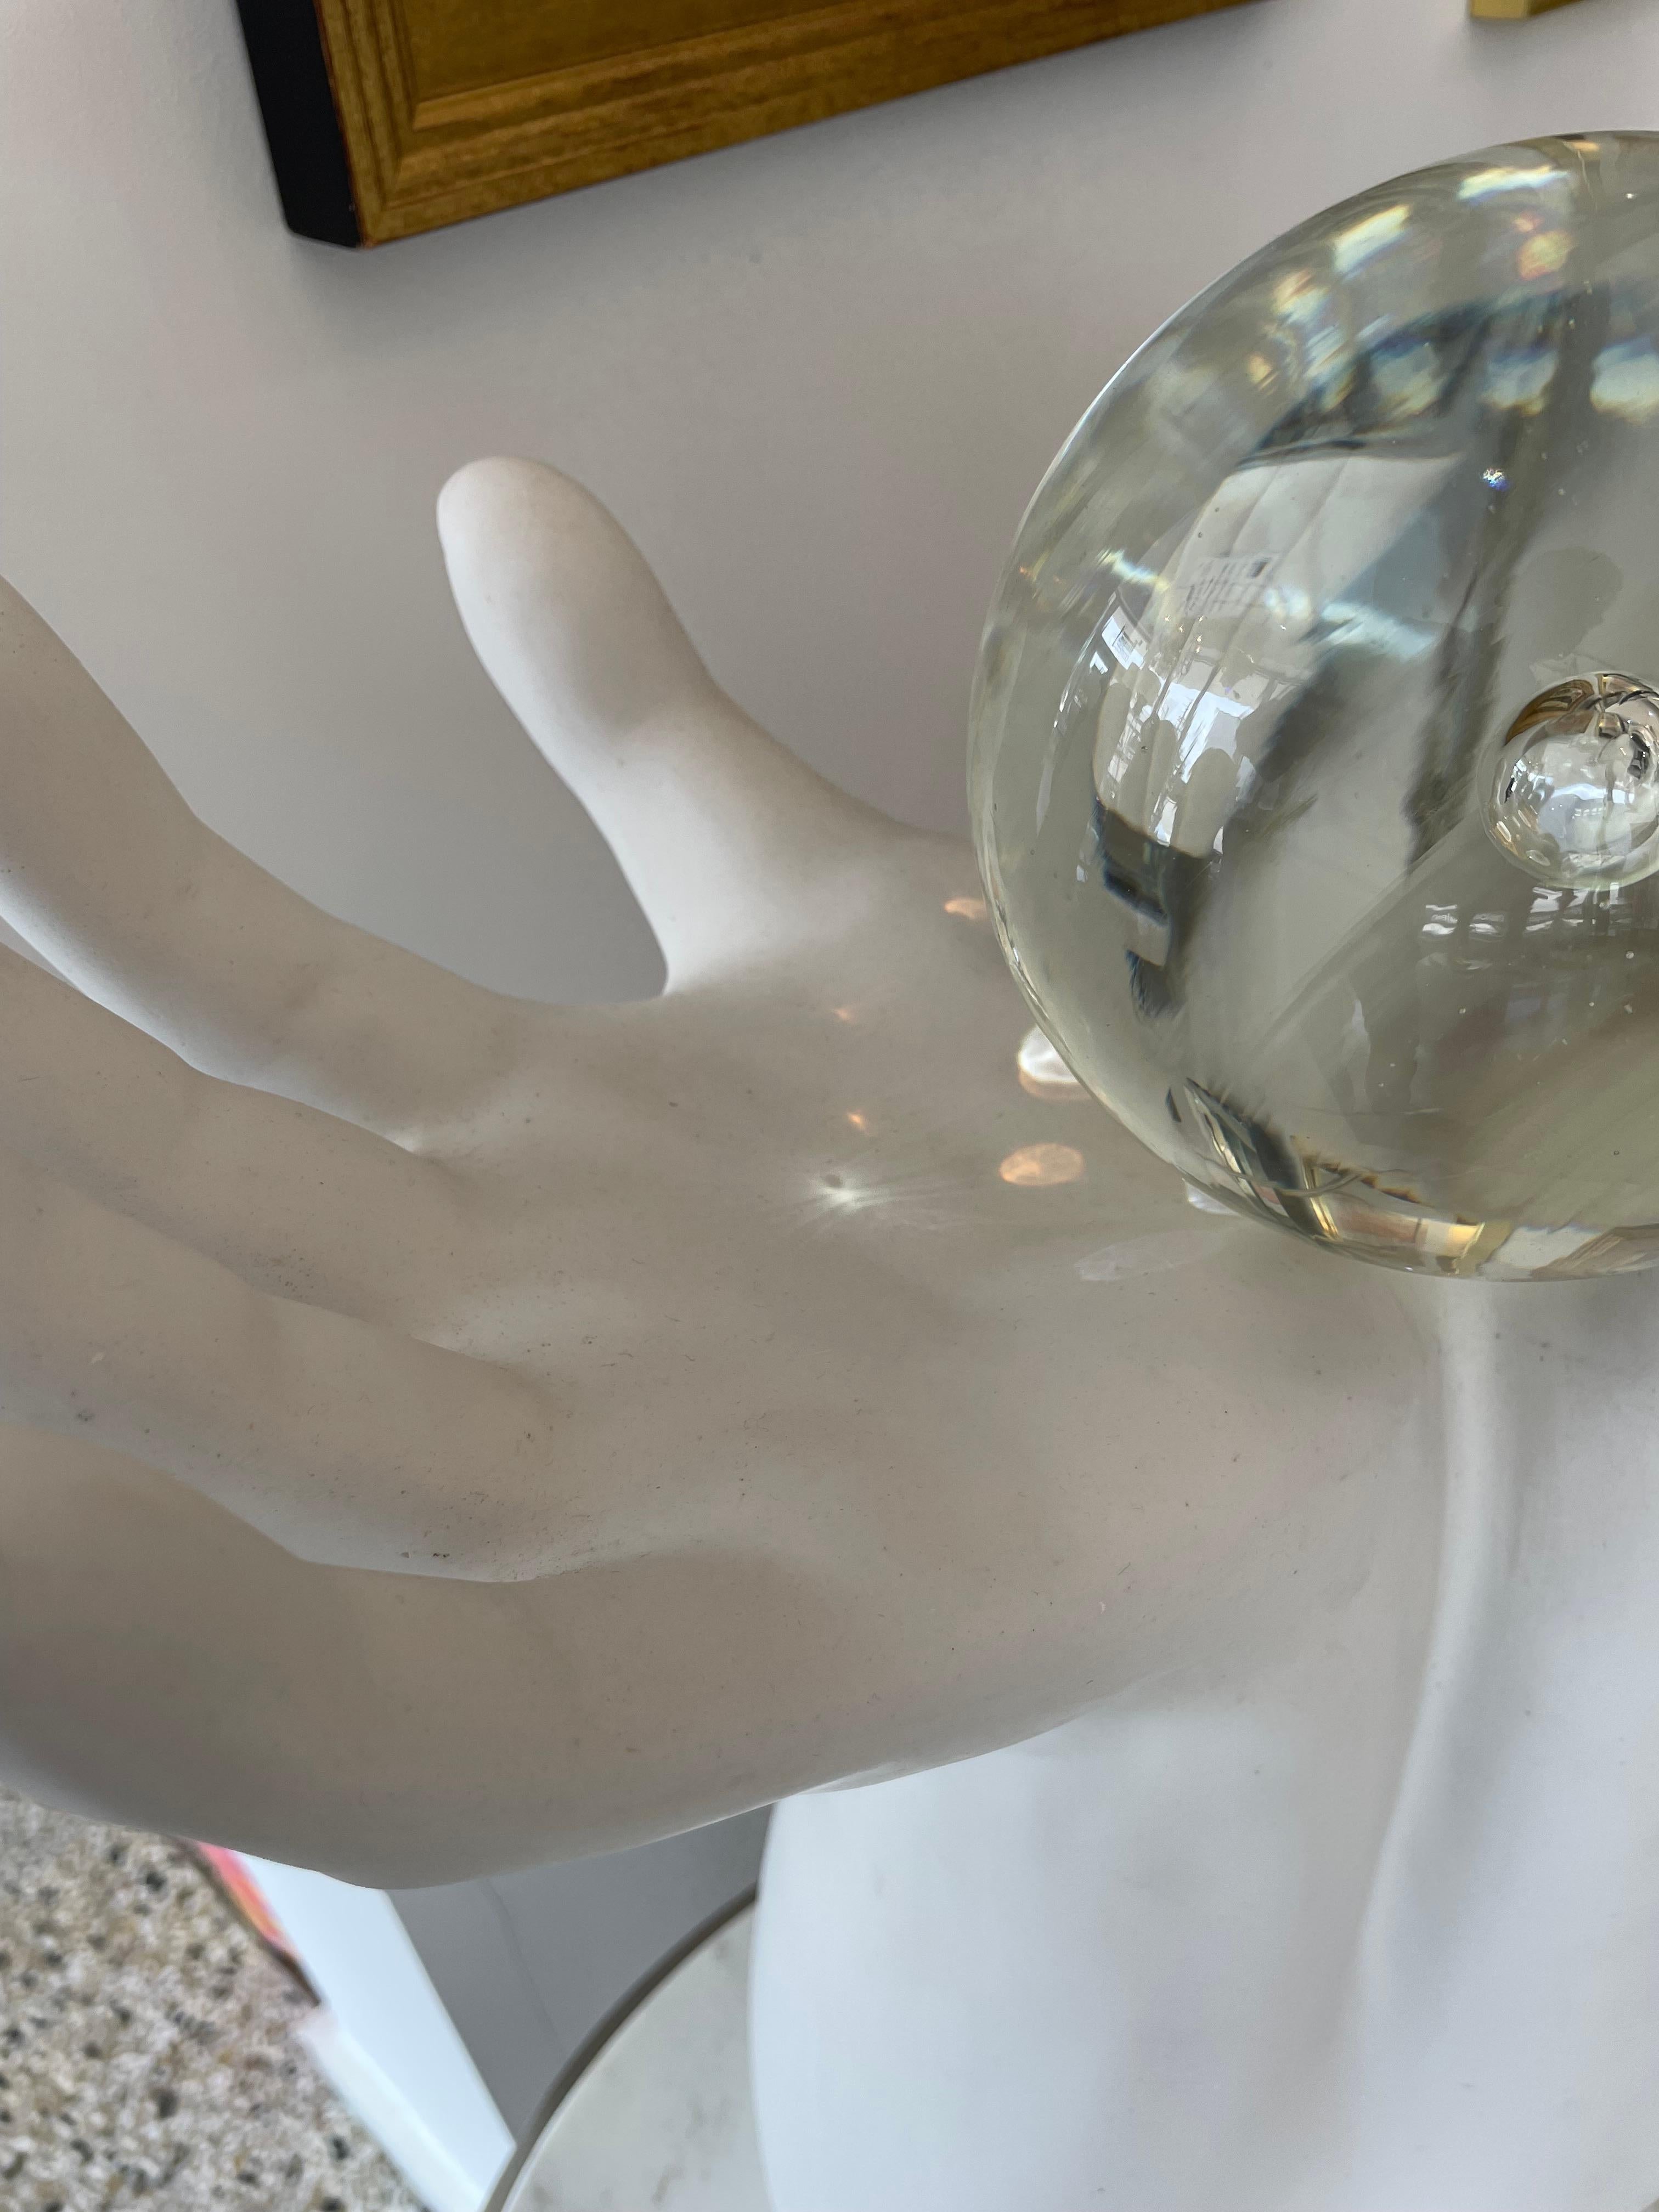 Figural Upturned Hands Sculpture Titled 